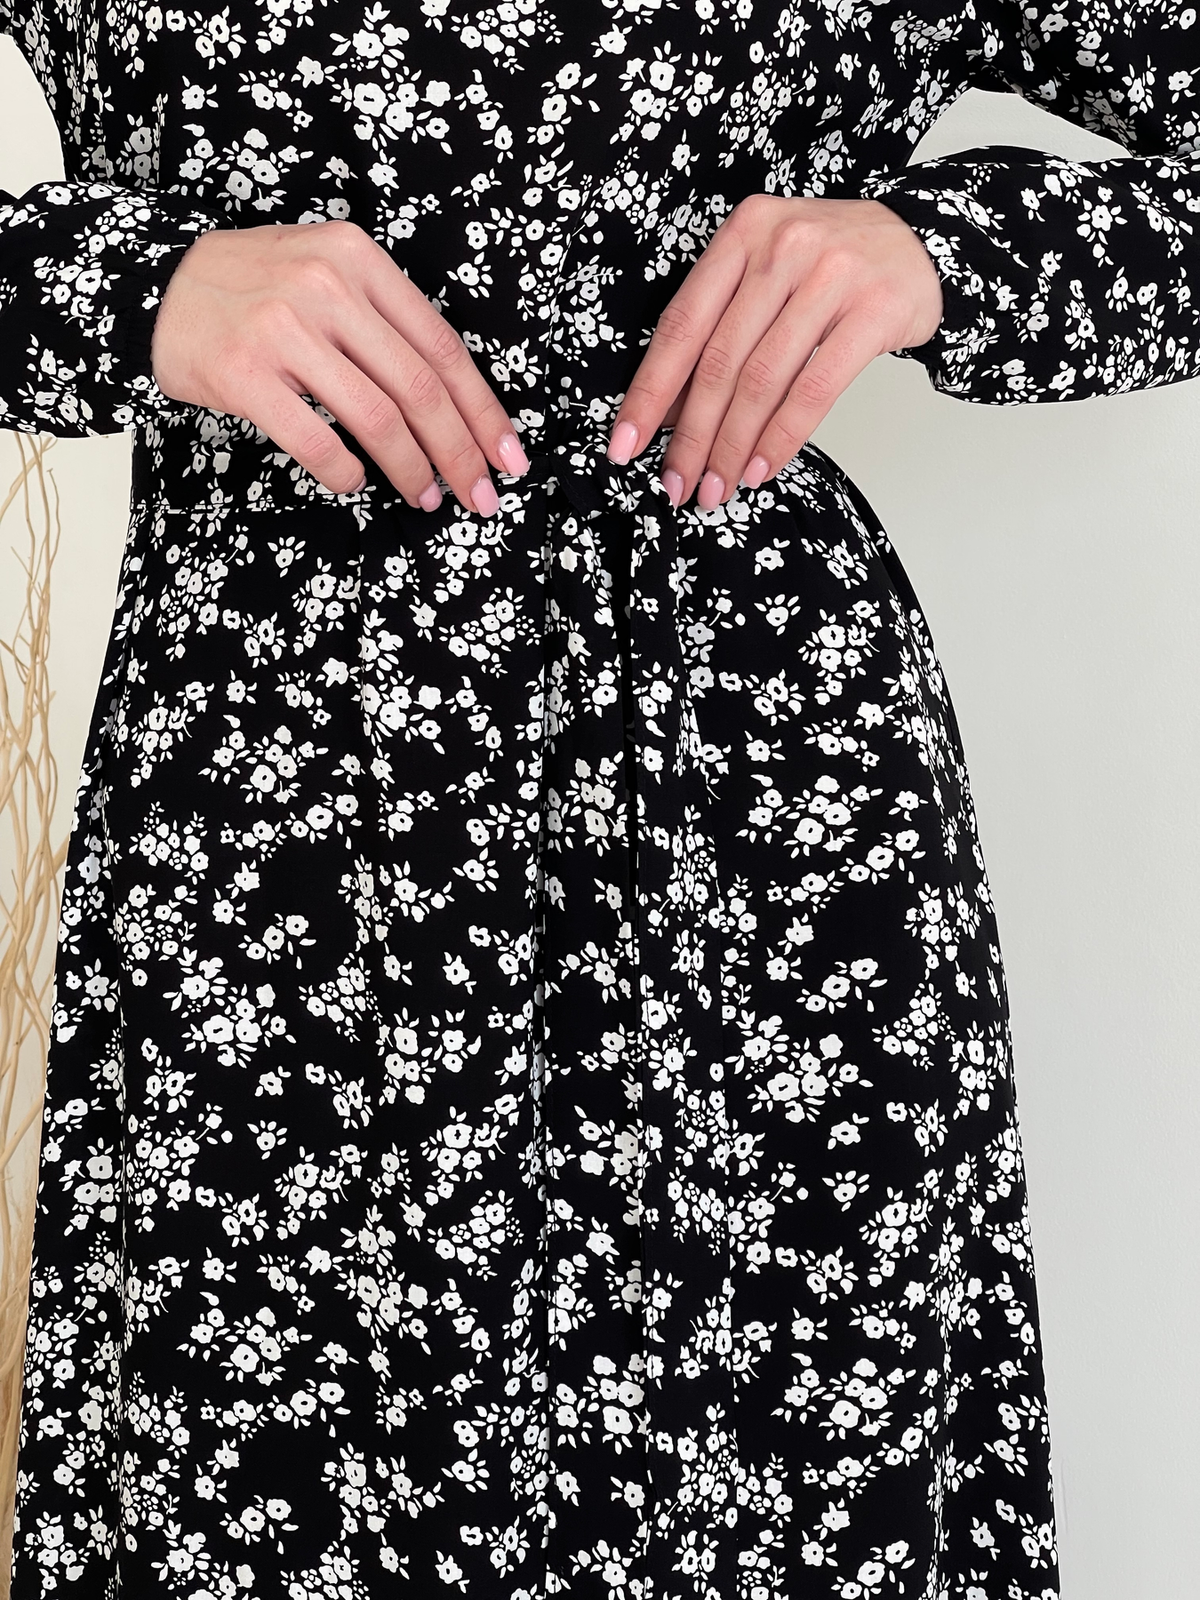 Купить Длинное платье в цветочек черное с длинным рукавом Merlini Фори 700001202, размер 42-44 (S-M) в интернет-магазине